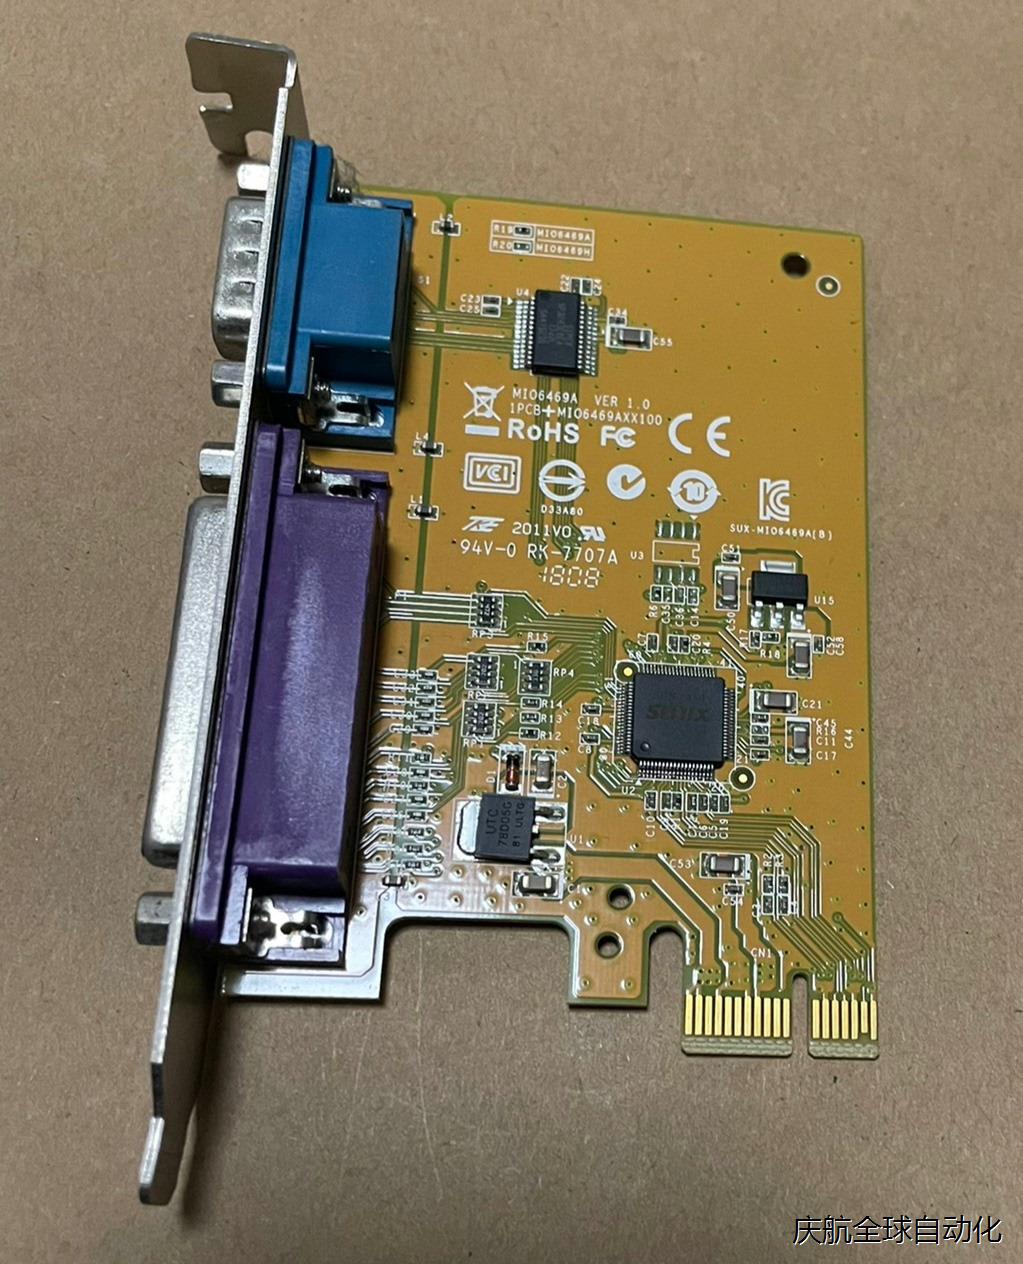 戴尔PCI-E 1X MIO649A 25针LPT并口打印+元器件 电子元器件市场 其它元器件 原图主图